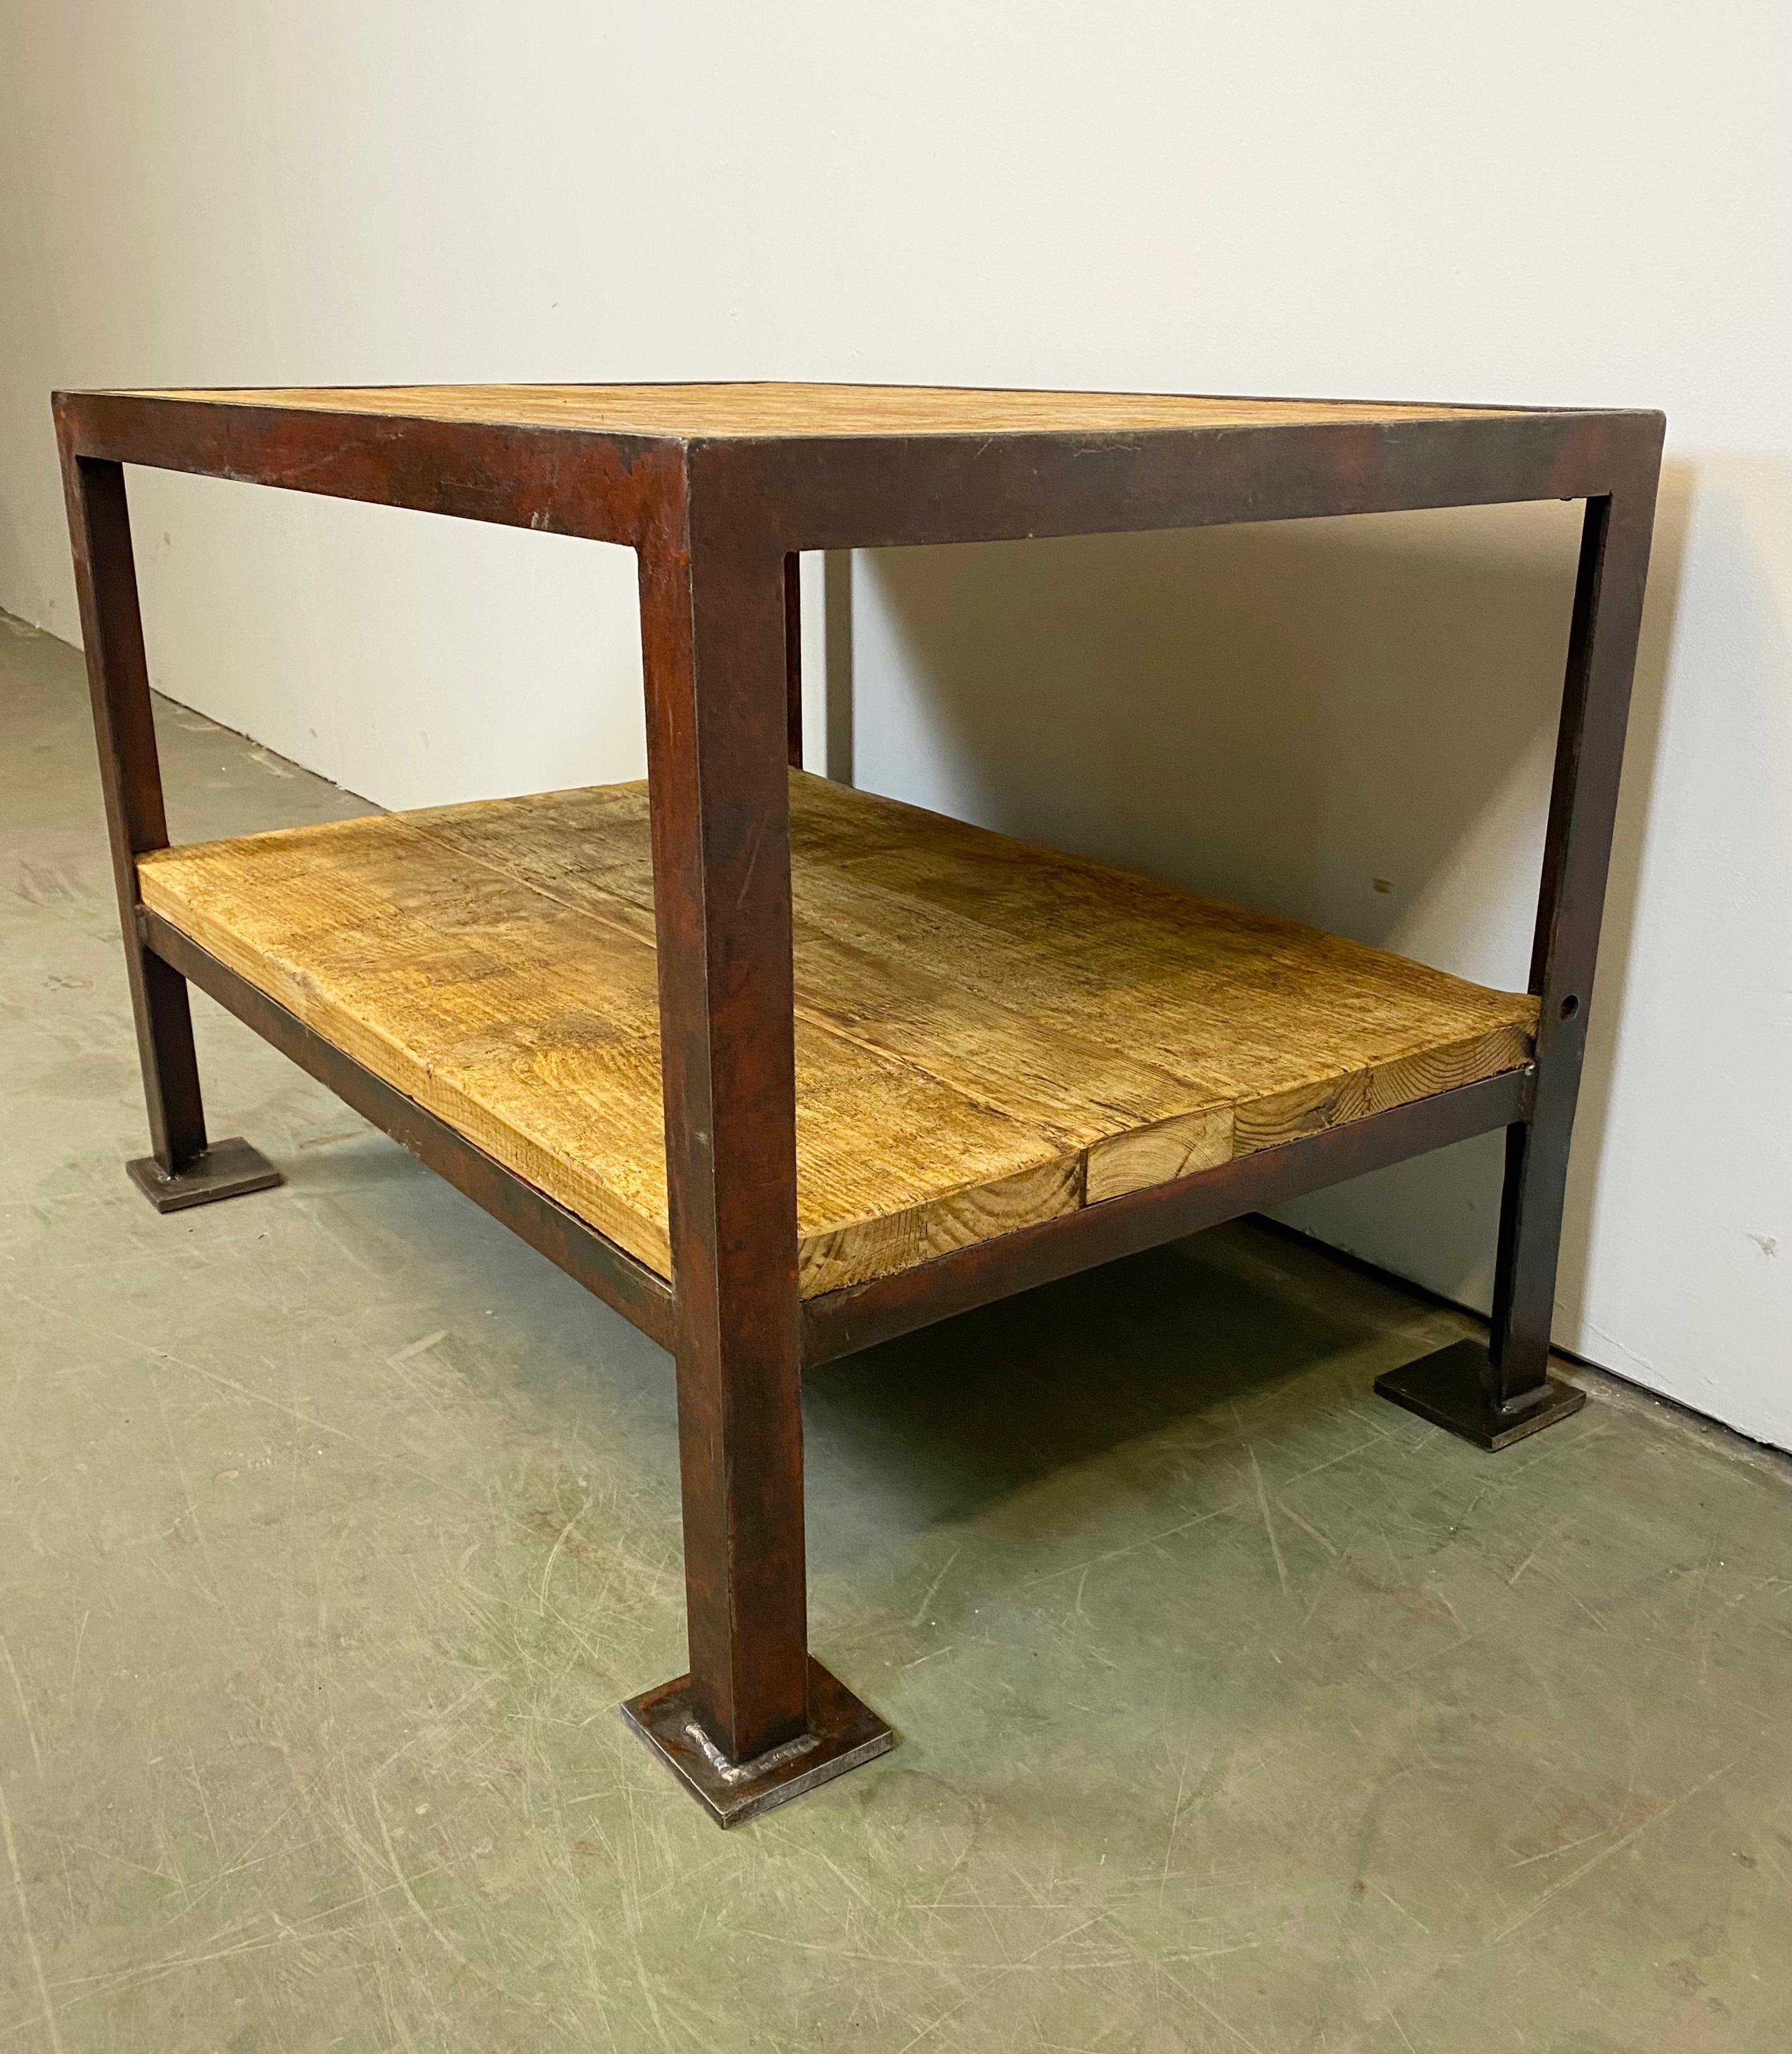 Table basse industrielle vintage des années 1960. Fabriqué en bois et en fer. Il présente une construction en fer rouge et deux plaques en bois massif. Le poids de la table est de 52 kg.